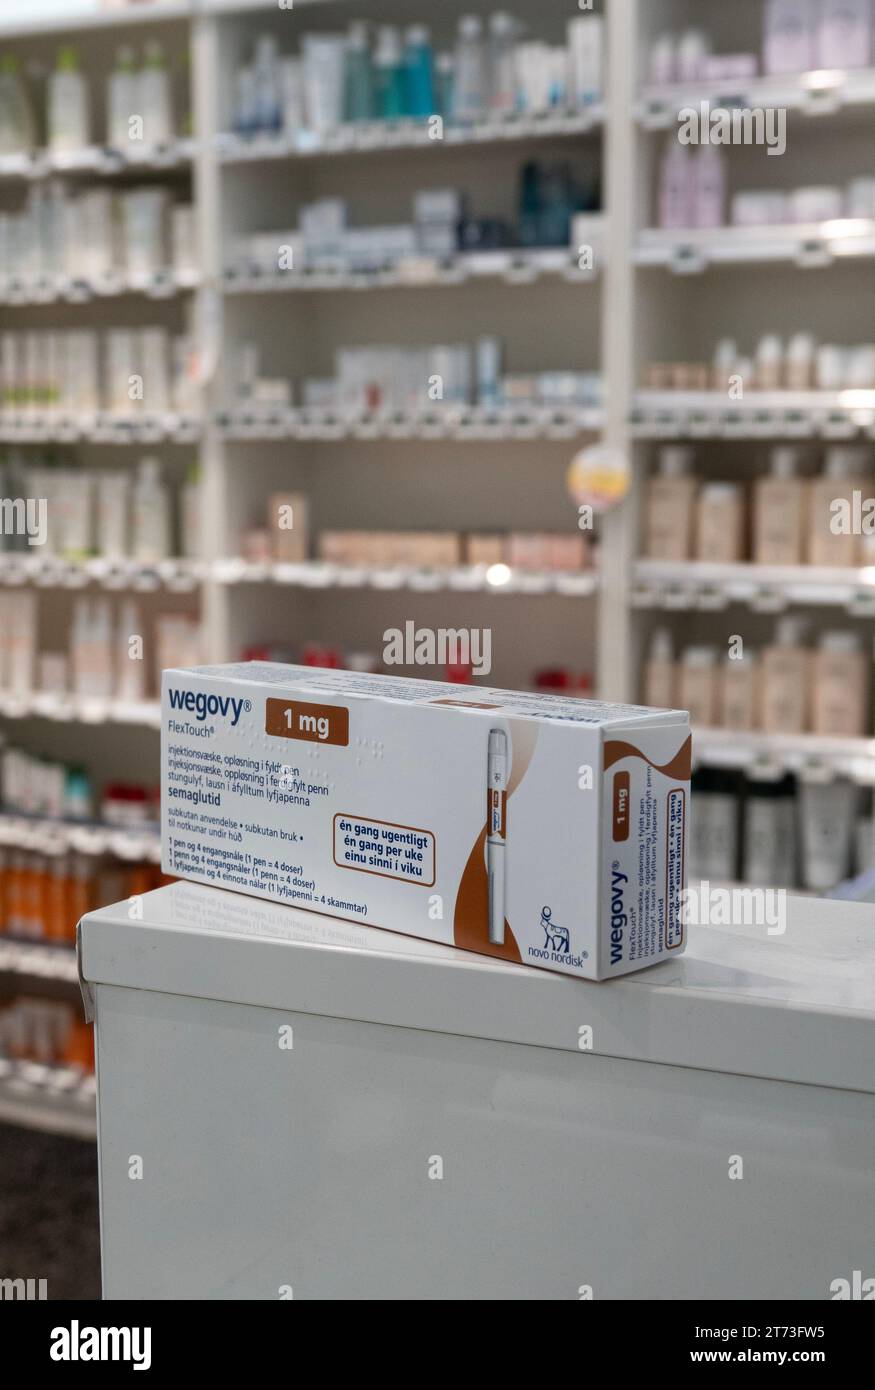 Boîte d'emballage de Wegovy (semaglutide) médicament injectable sur ordonnance, médicament de perte de poids de Novo Nordisk AS. Étagères de magasin de pharmacie en arrière-plan. Banque D'Images